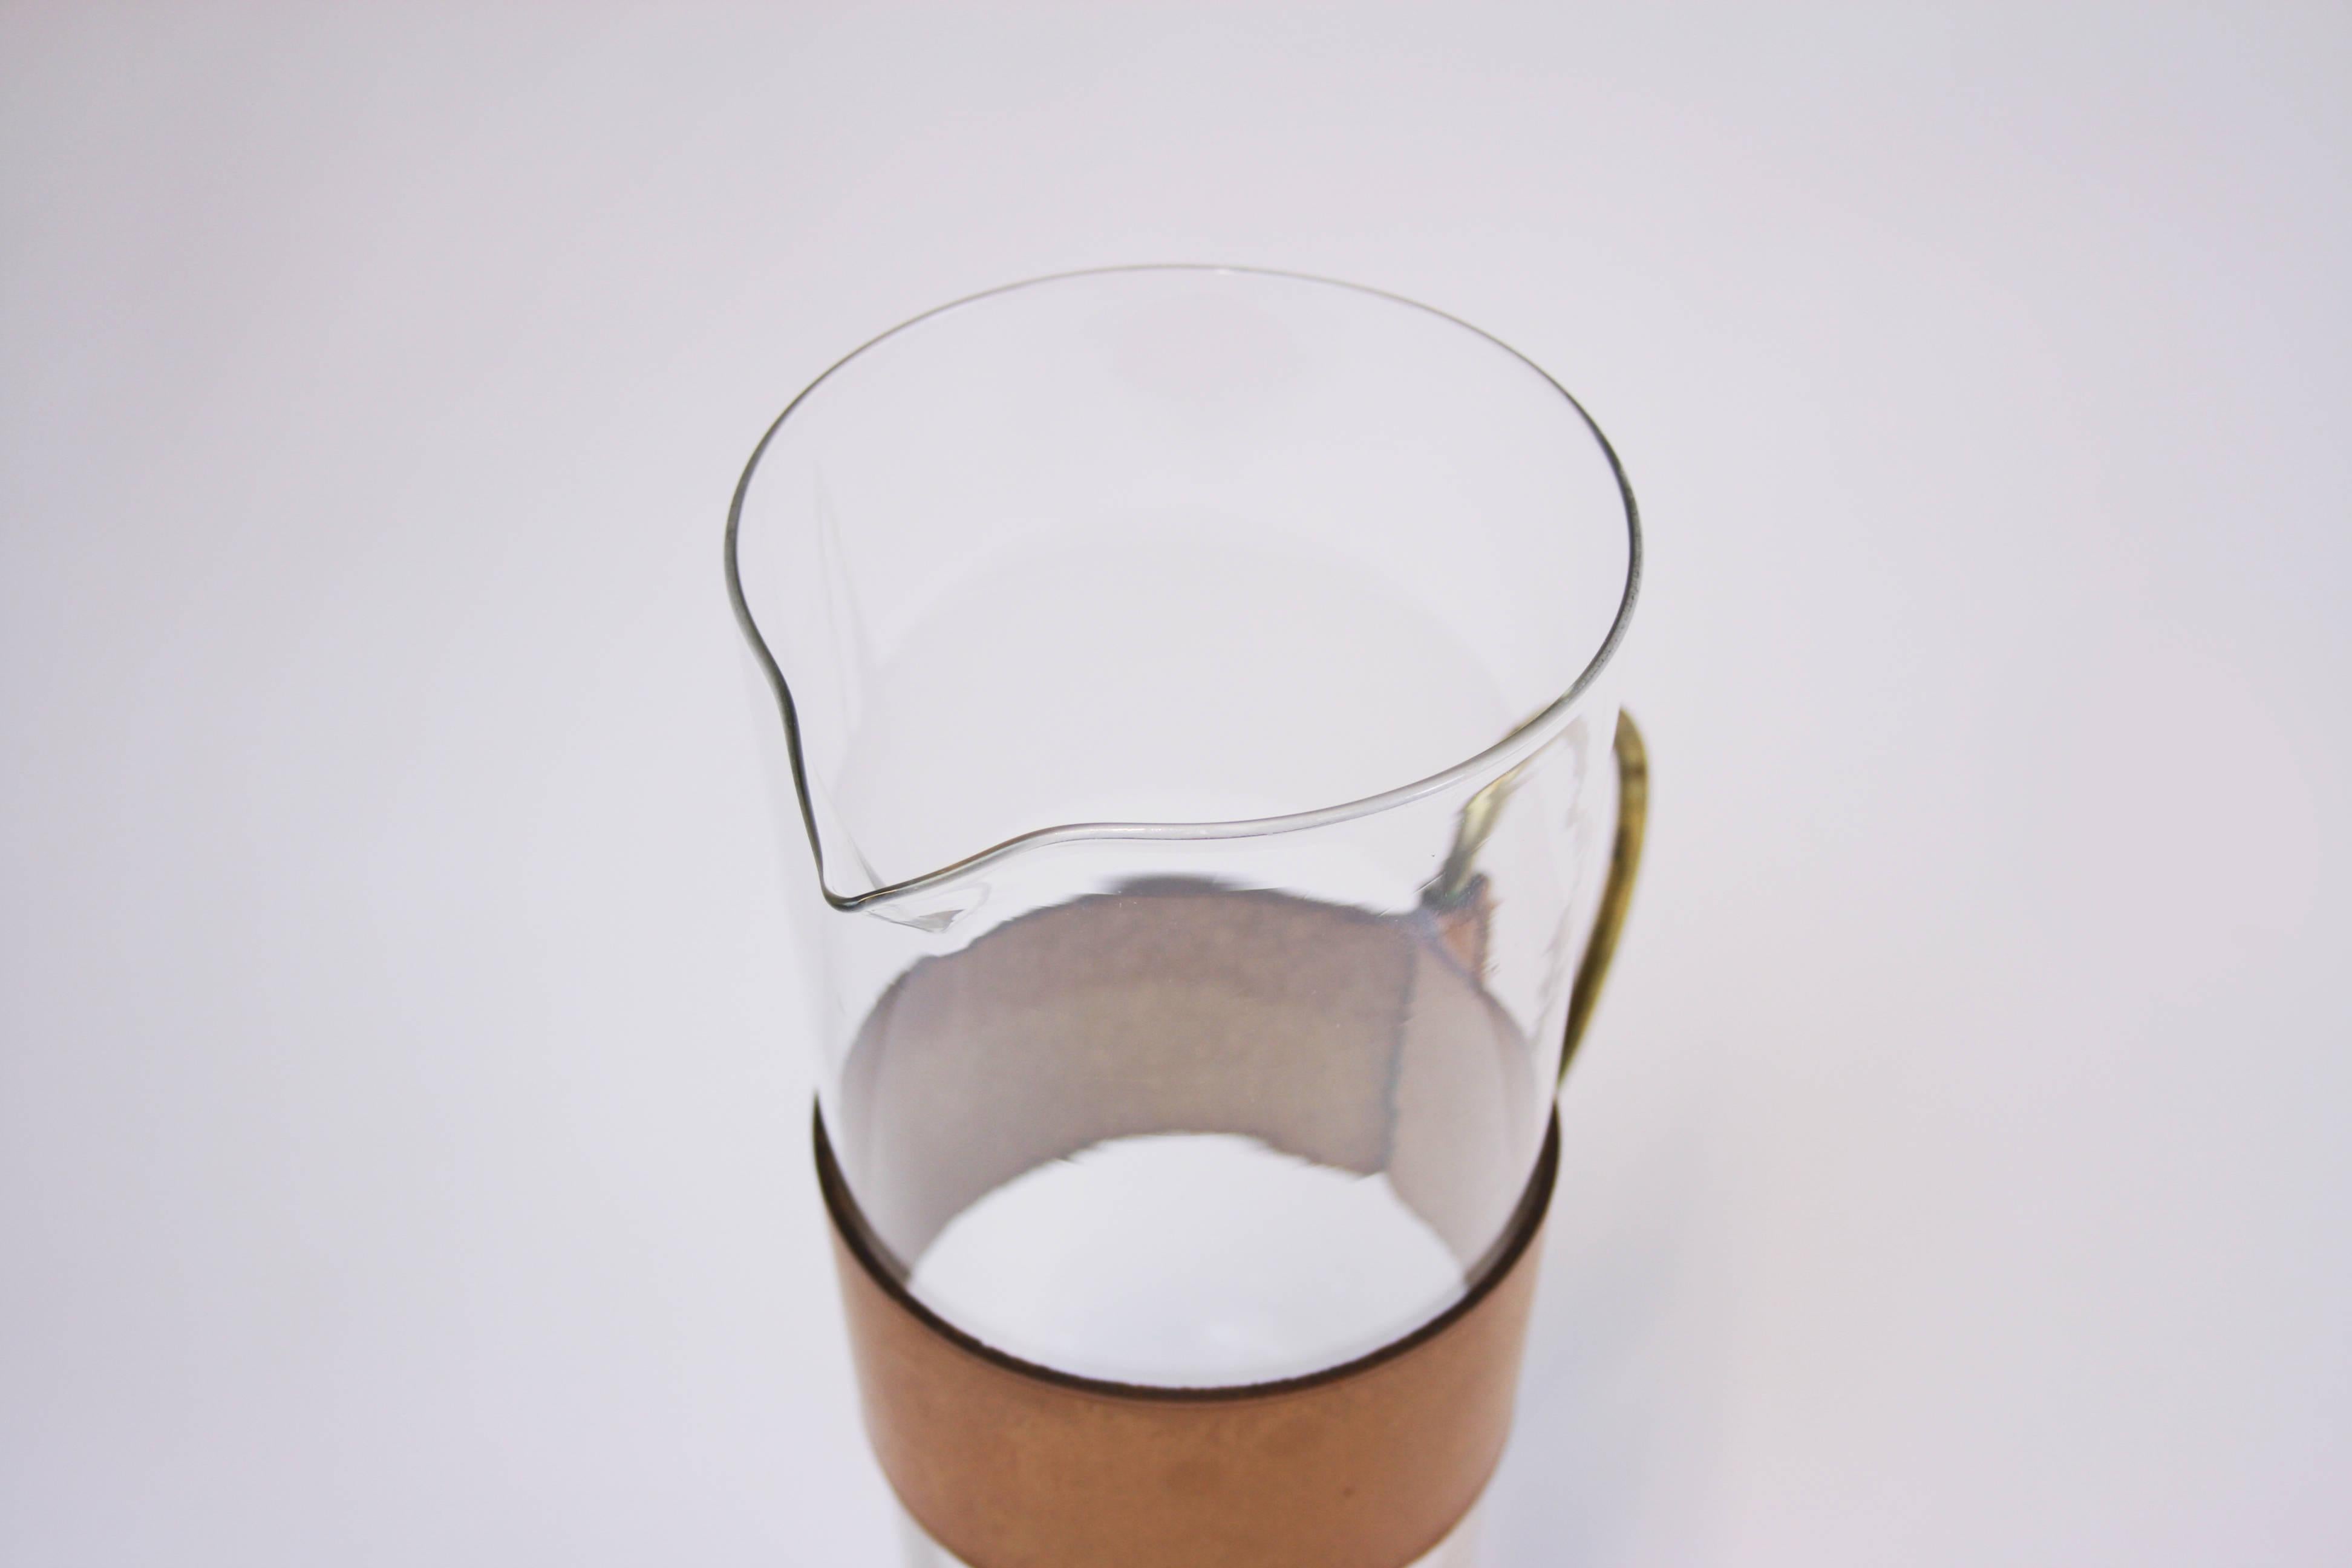 Pichet ou aiguière en laiton cuir verre Werkstätte Carl Auböck Vienne années 1950. Un objet rare et précieux dans un état d'origine étonnant, capable de devenir un bijou pour chaque collection. Fabriqué à la fin des années 1950, le verre a survécu à